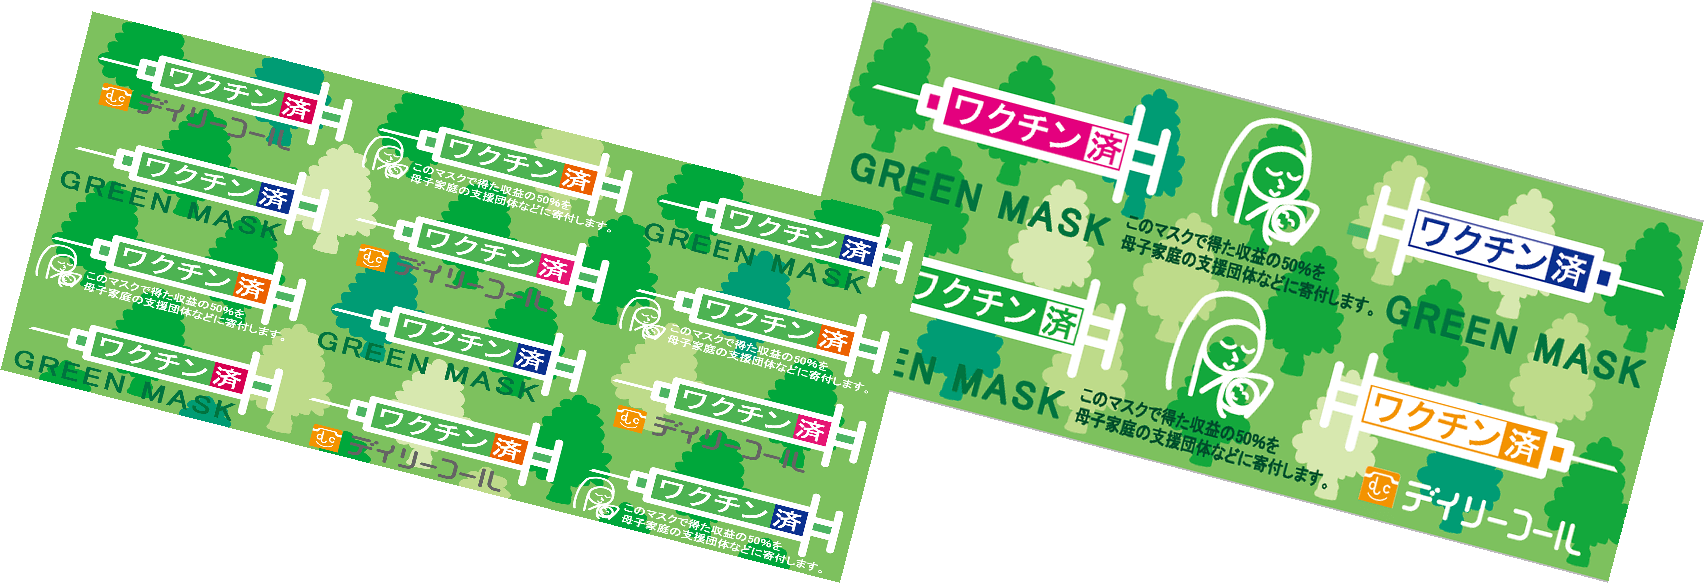 グリーンマスクの正規品の一つ、Aセットです。偽物にご注意下さい。寄付付きのデイリーコール社のロゴマーク入りの物をお買い求め下さい